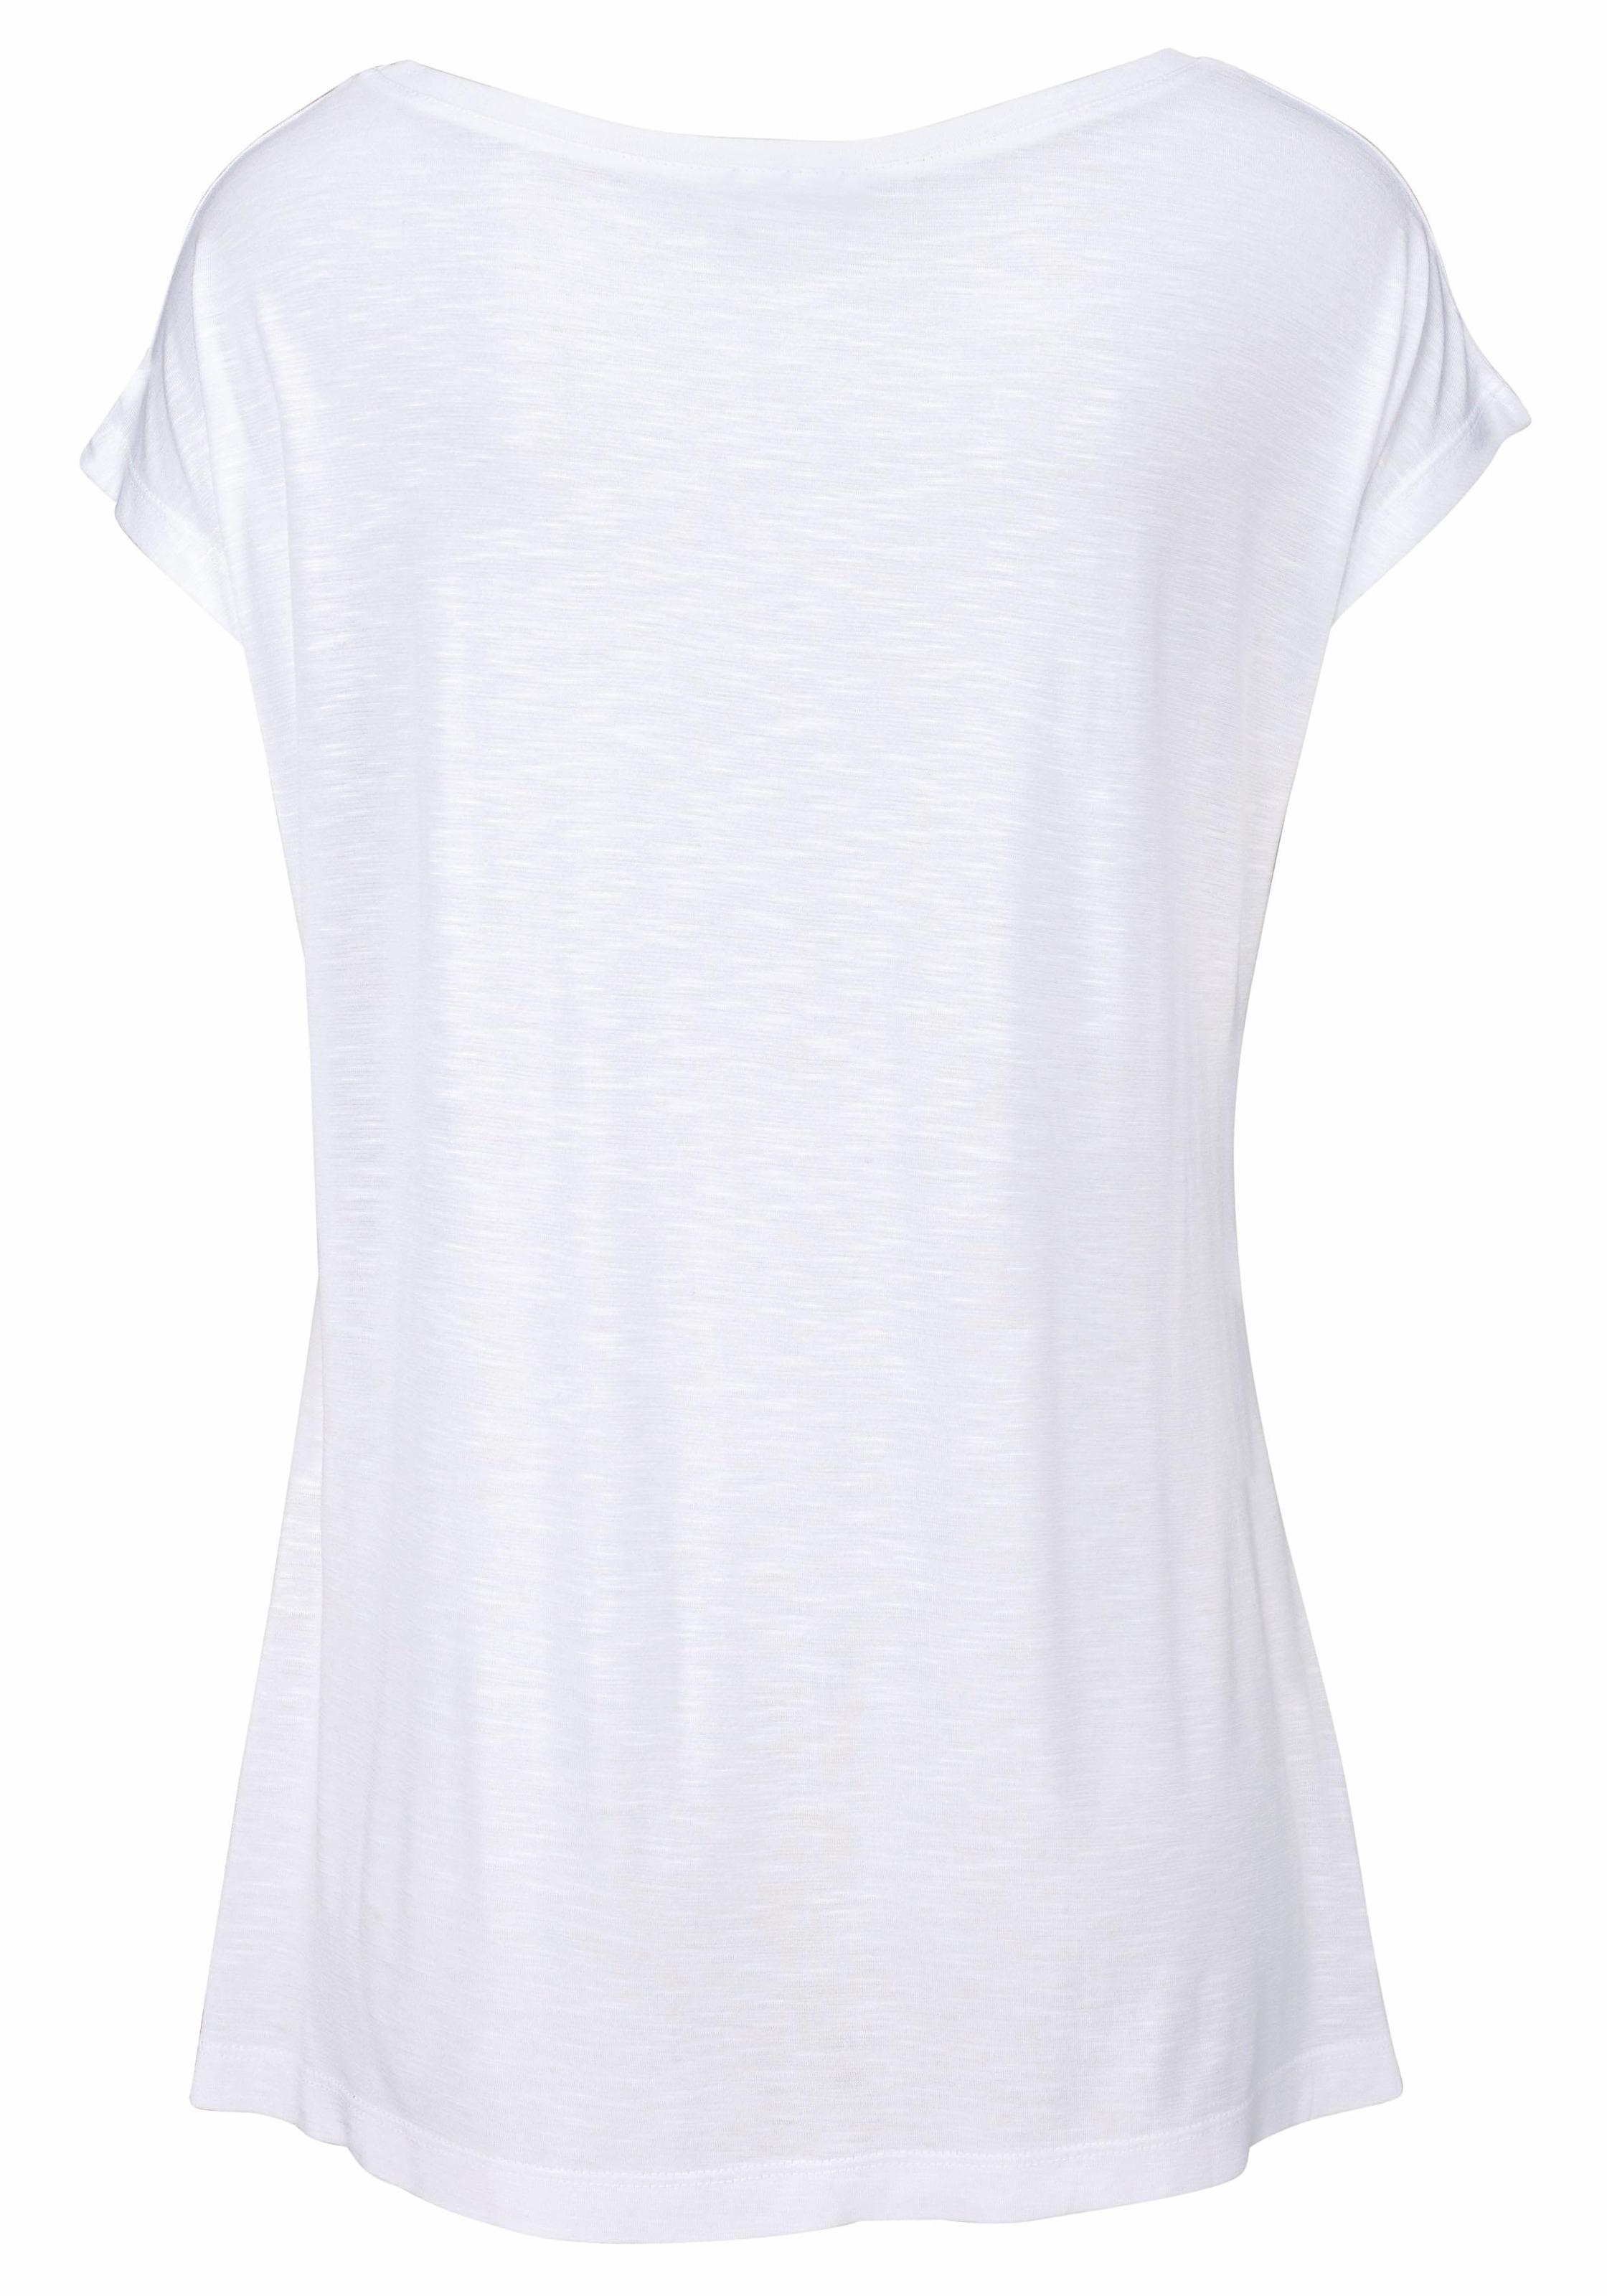 LASCANA Strandshirt, mit Print und glänzendem Effekt, Ethno-Look, casual